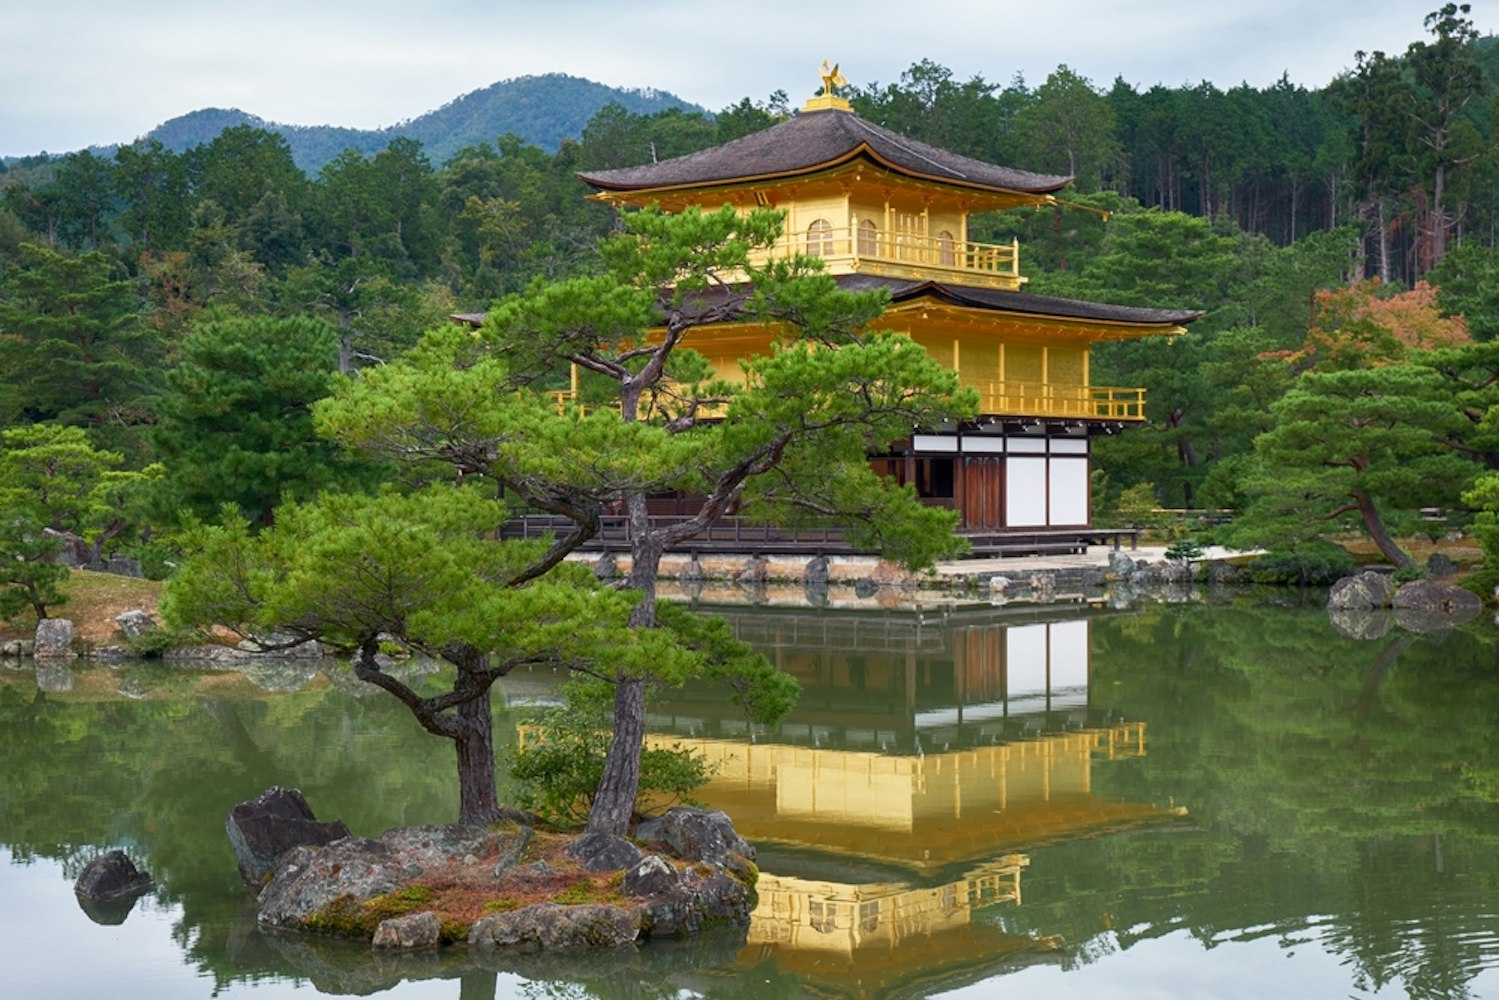 Kyoko-chi (Mirror pond)